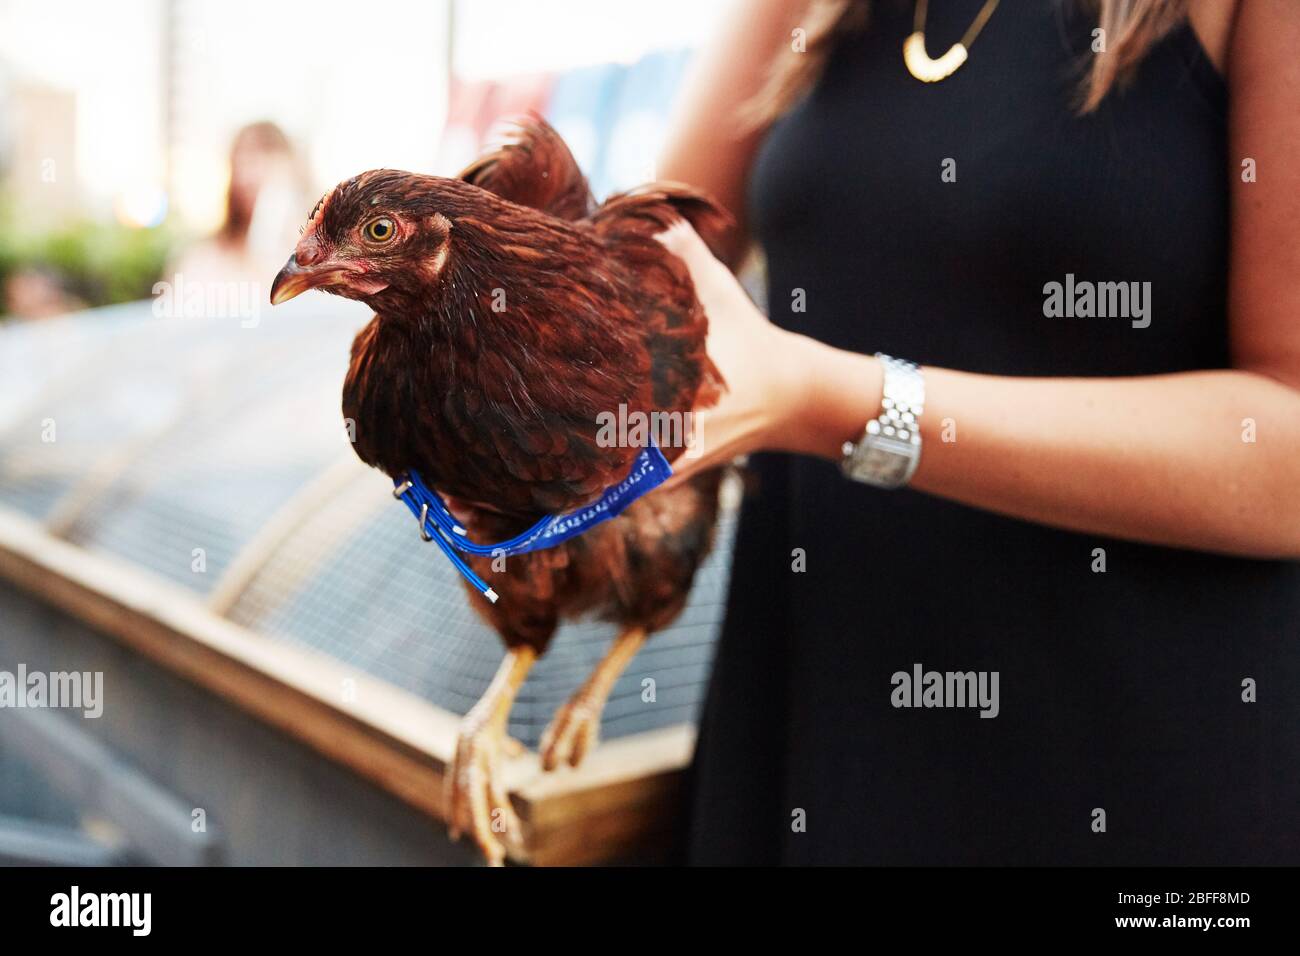 Une femme bien habillée tient une poule pour la première fois Banque D'Images